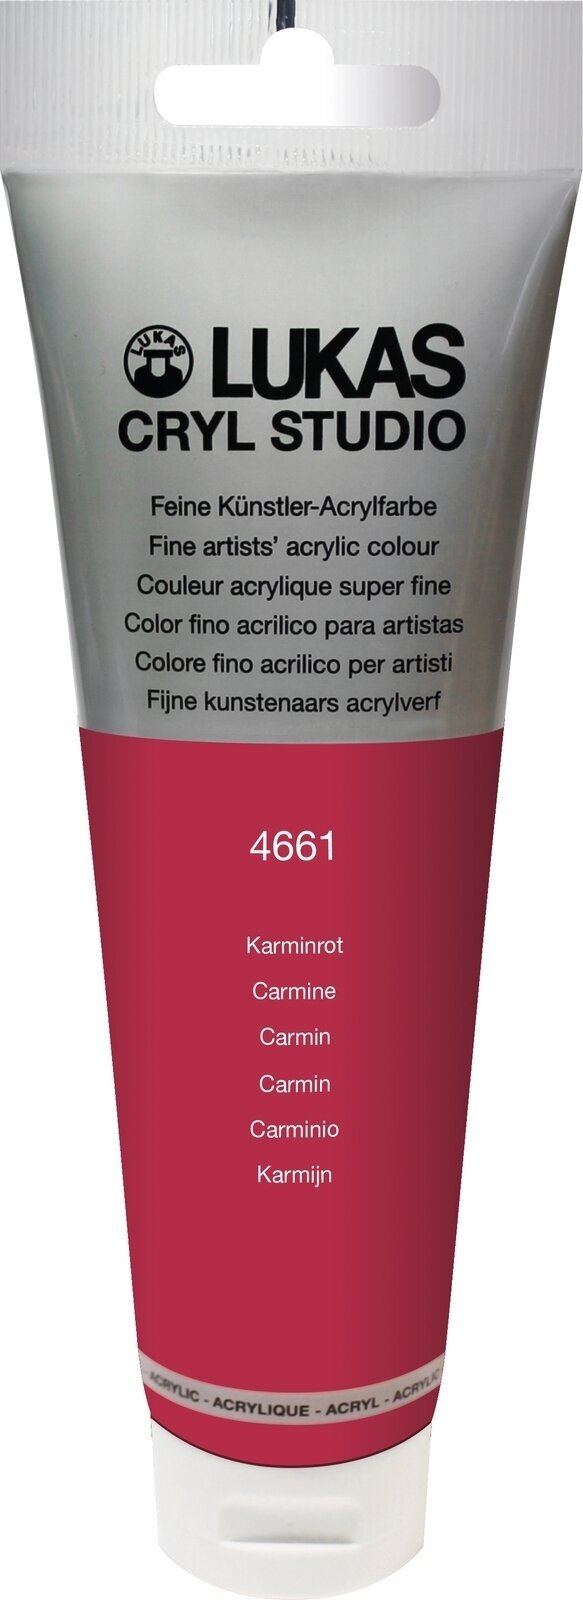 Akrylová barva Lukas Cryl Studio Akrylová barva 125 ml Carmine